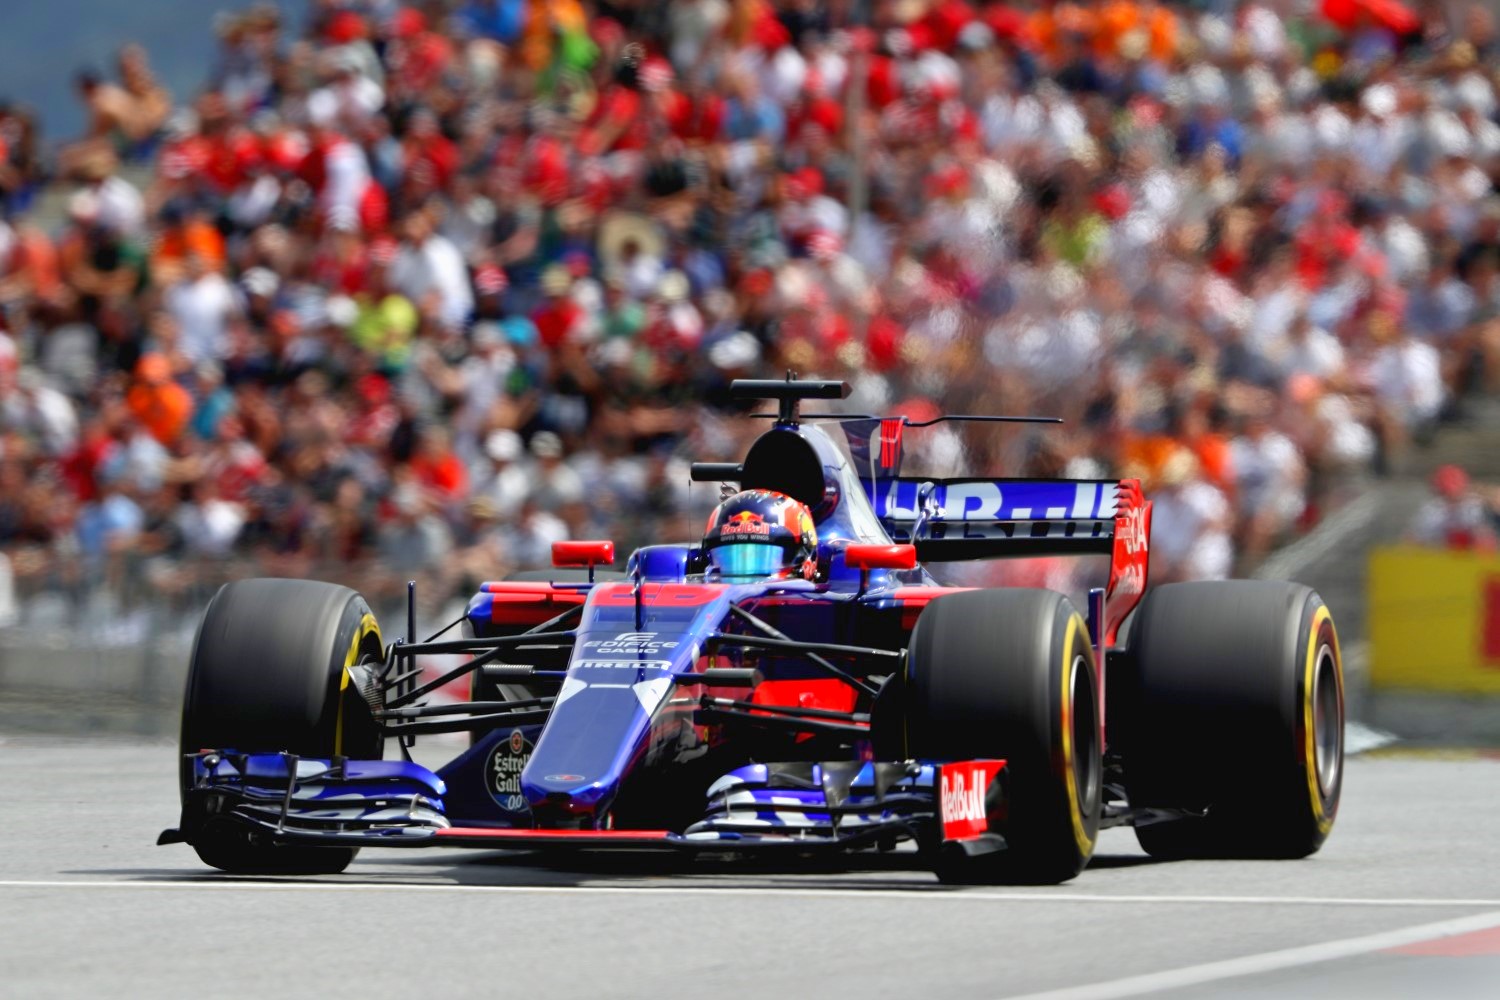 McLaren hope Toro Rosso switch to Honda power